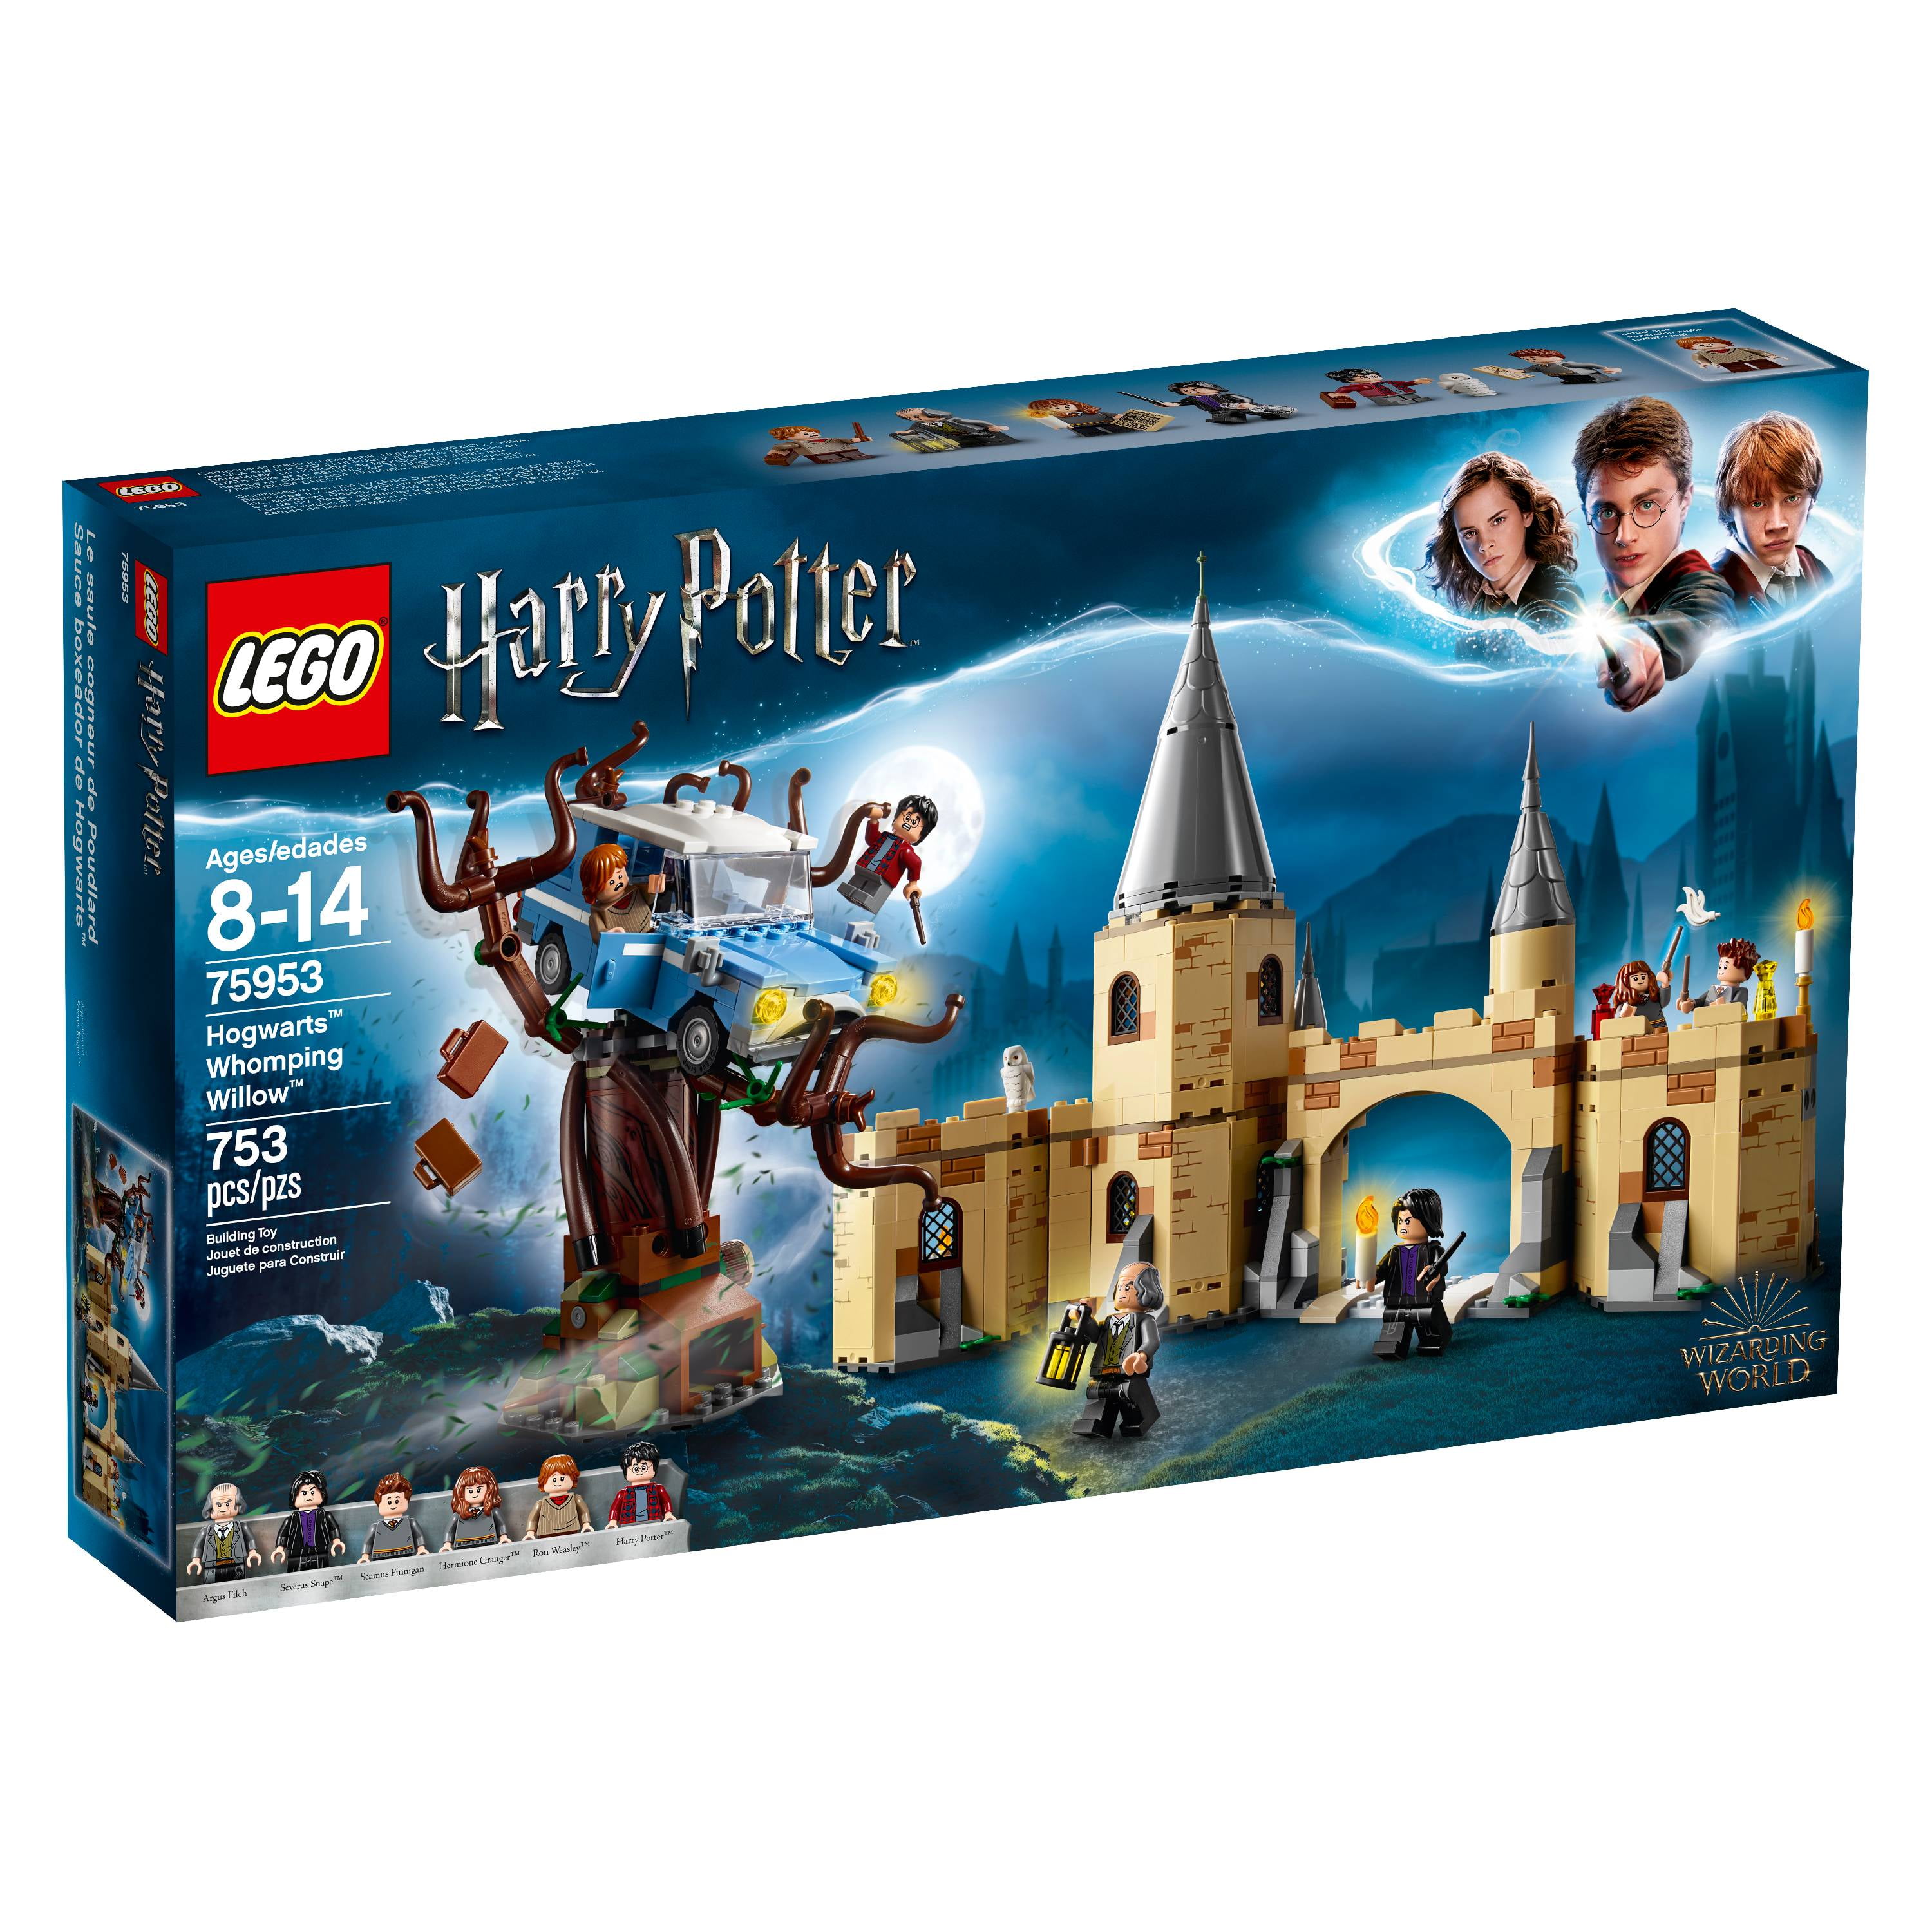 Et centralt værktøj, der spiller en vigtig rolle beskæftigelse Amfibiekøretøjer LEGO Harry Potter Hogwarts Whomping Willow 75953 (753 Pieces) - Walmart.com